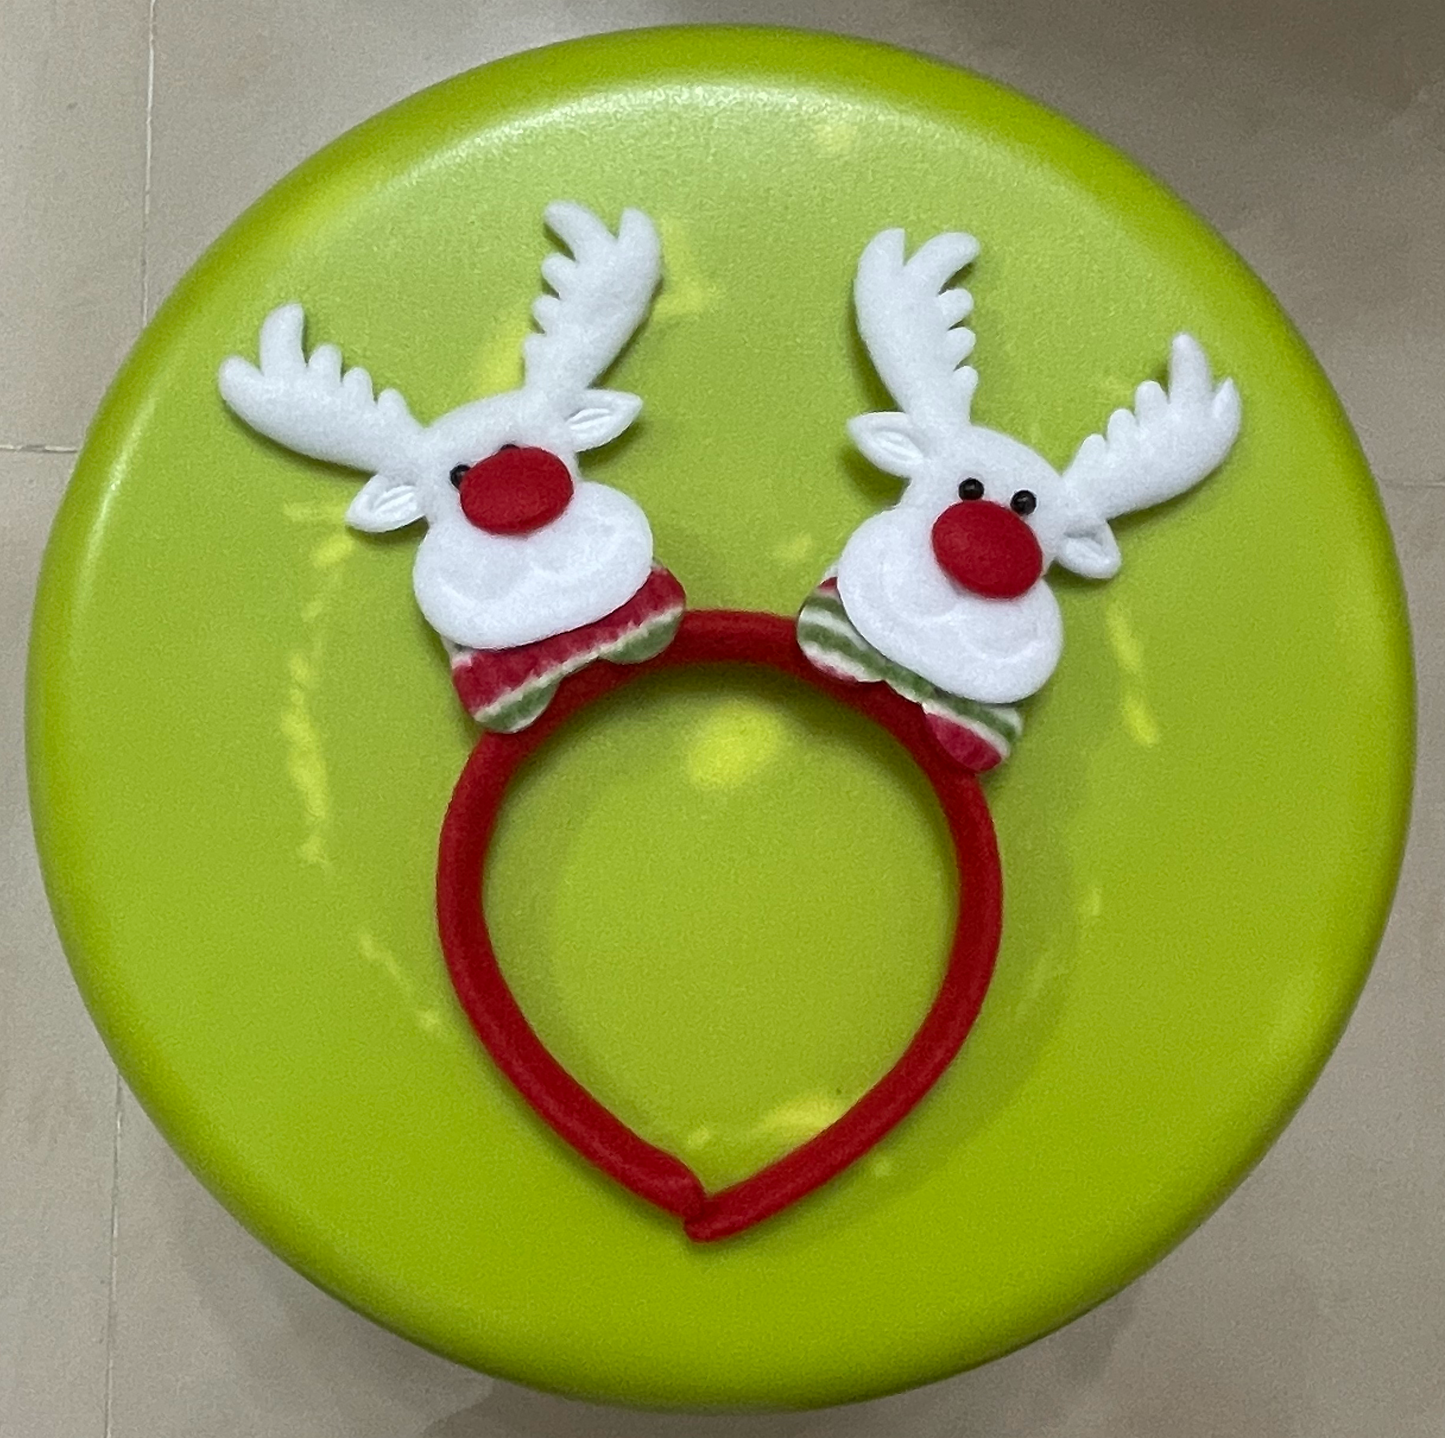 聖誕頭箍(Christmas Headband)